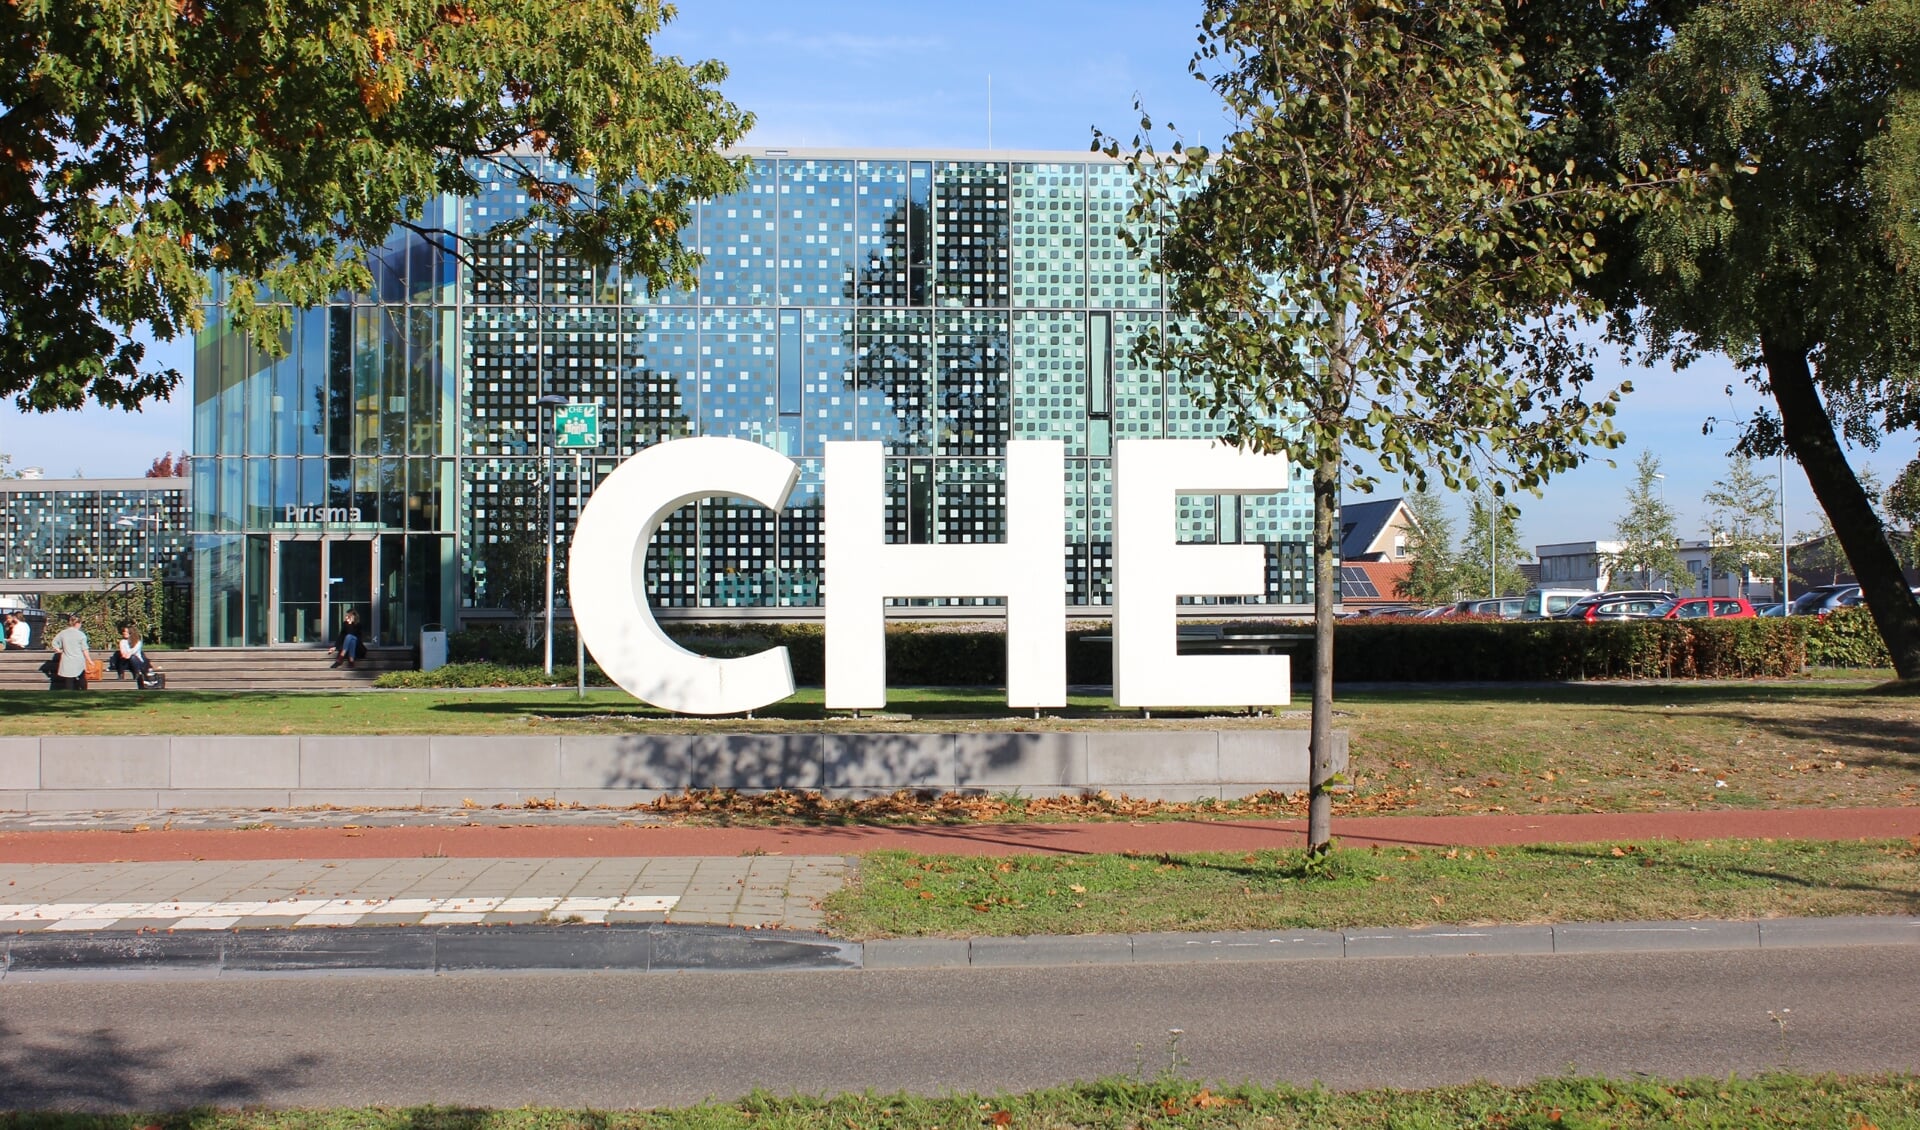 De kenmerkende levensgrote CHE-letters, met op de achtergrond een deel van het schoolgebouw